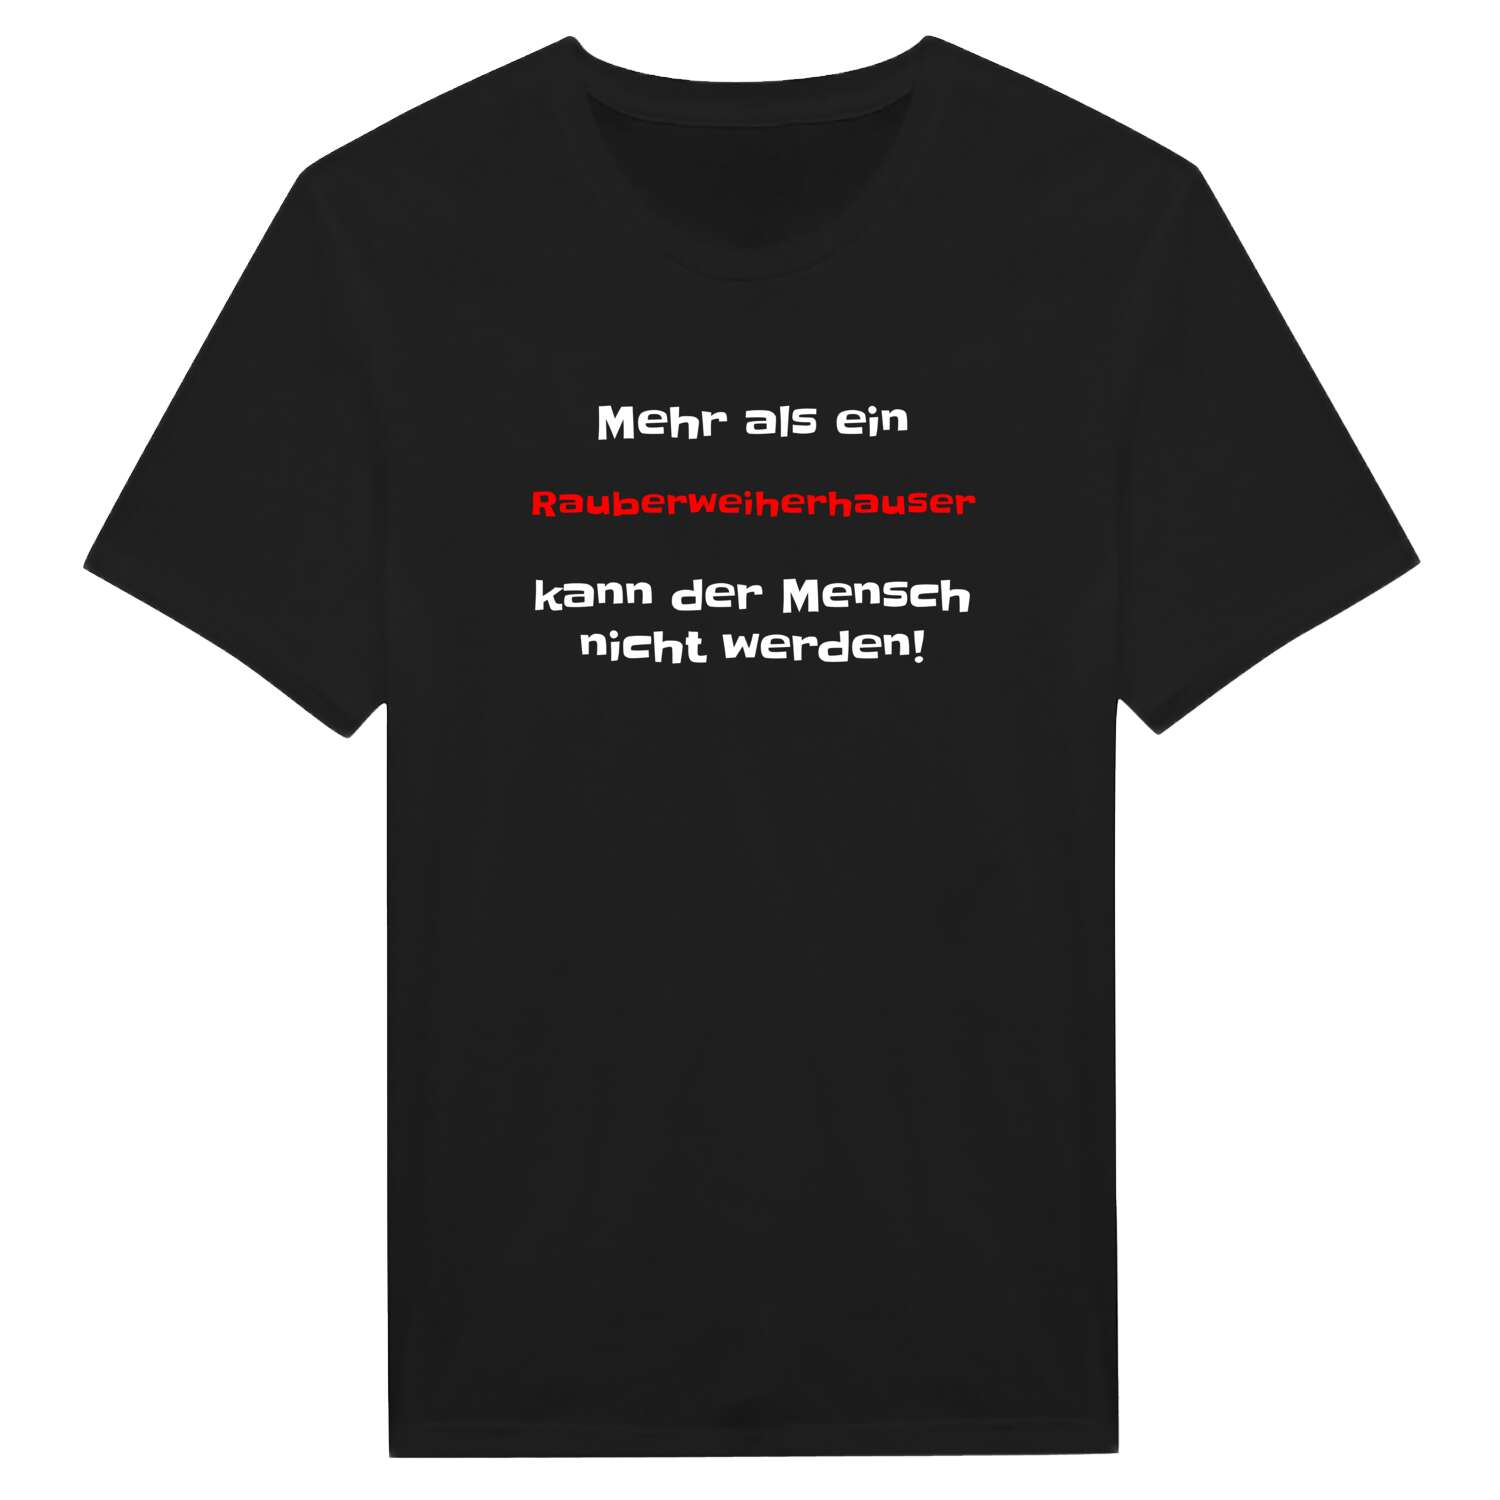 Rauberweiherhaus T-Shirt »Mehr als ein«